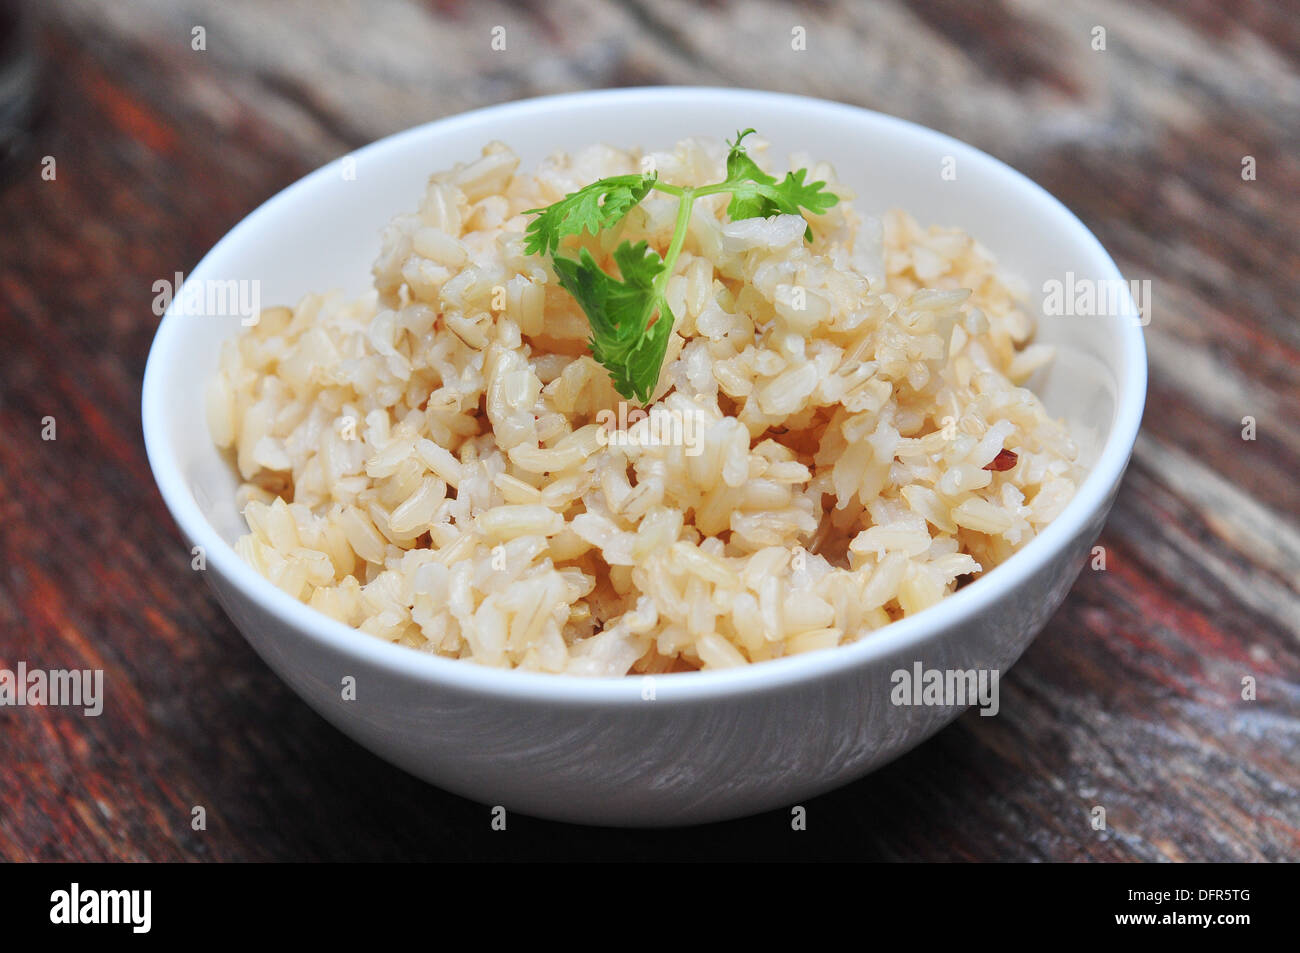 La culture du riz en Thaïlande - un bol de riz bio servi dans les restaurants thaïlandais Banque D'Images